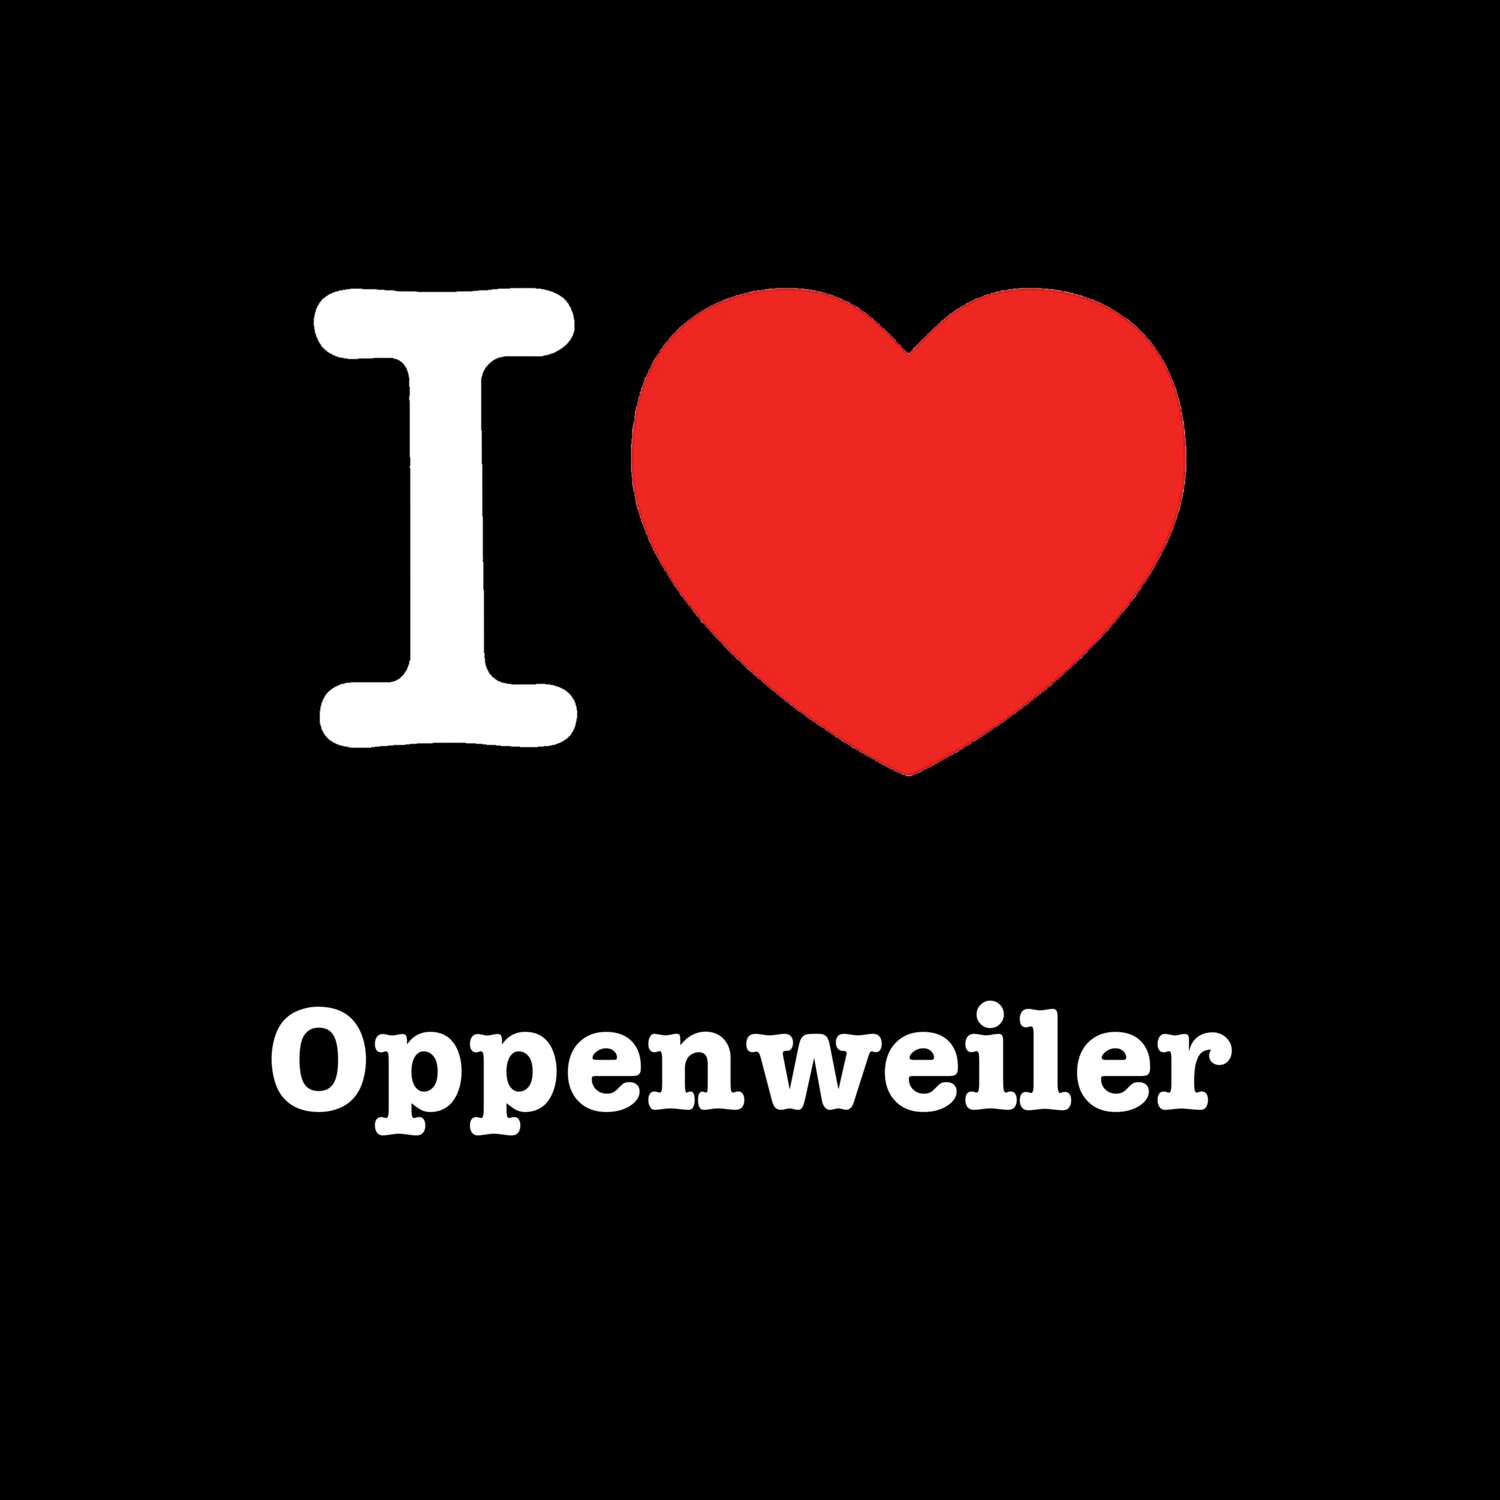 Oppenweiler T-Shirt »I love«